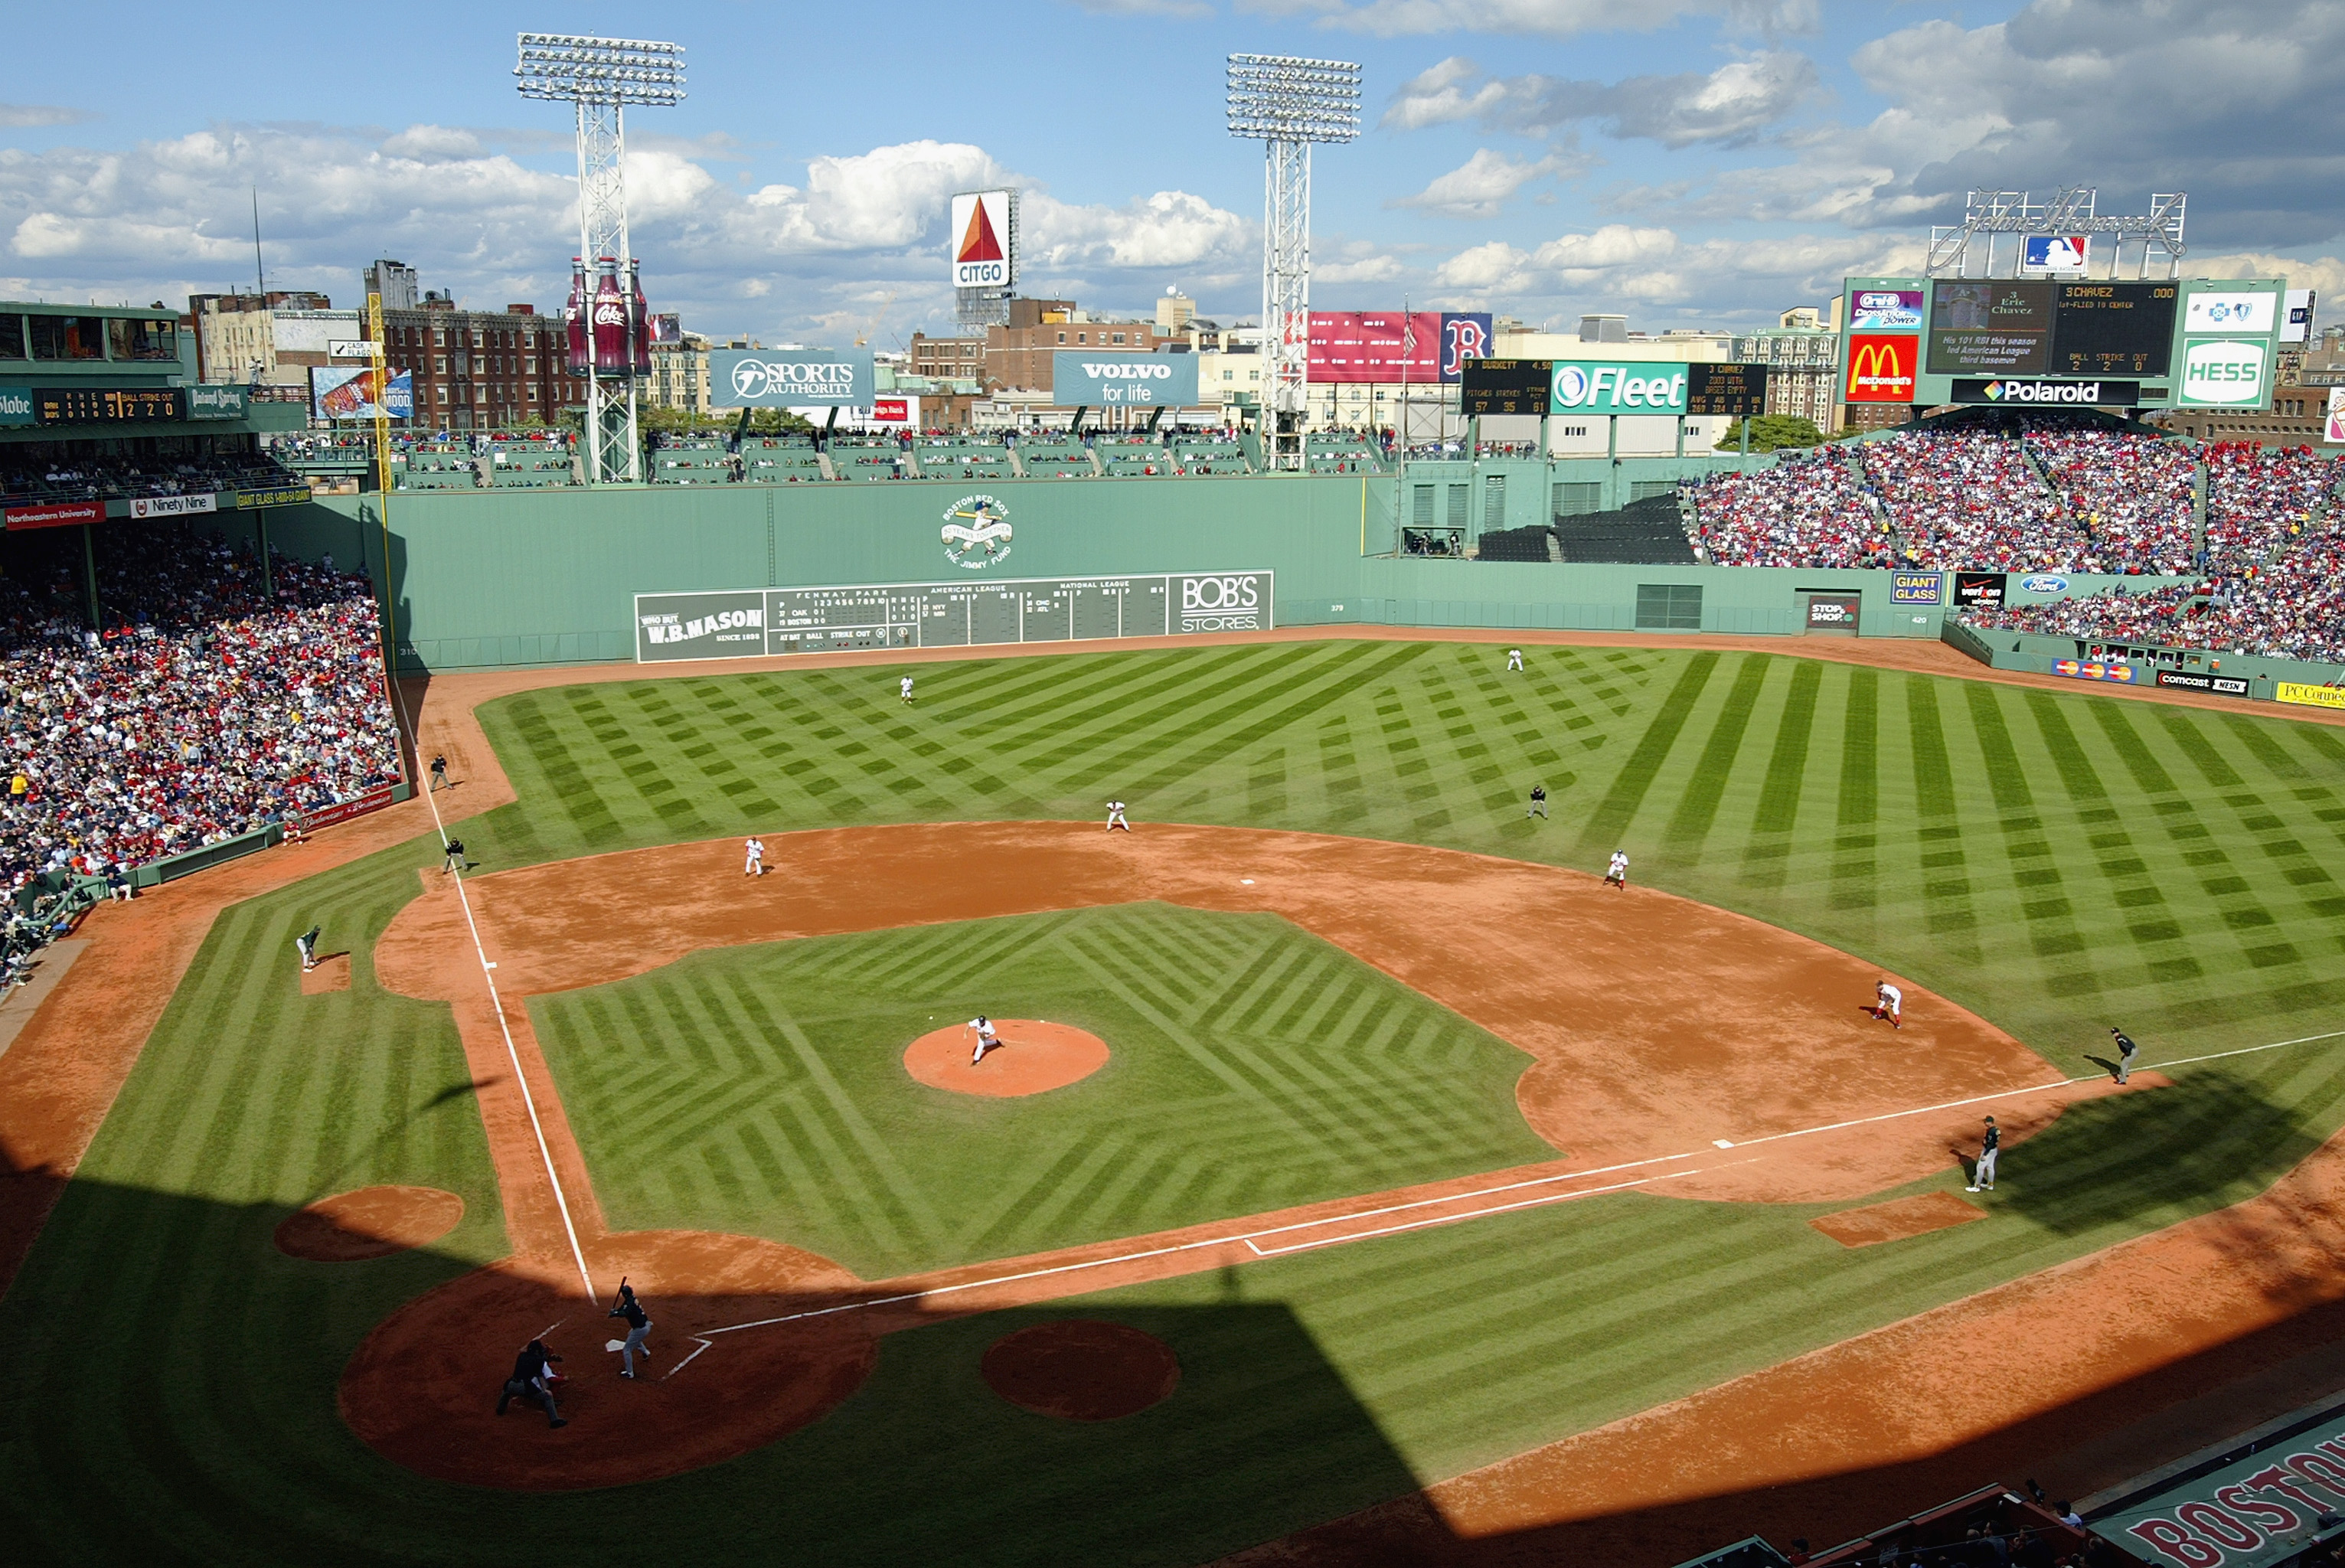 Fenway Park, Boston Red Sox's ballpark - Ballparks of Baseball